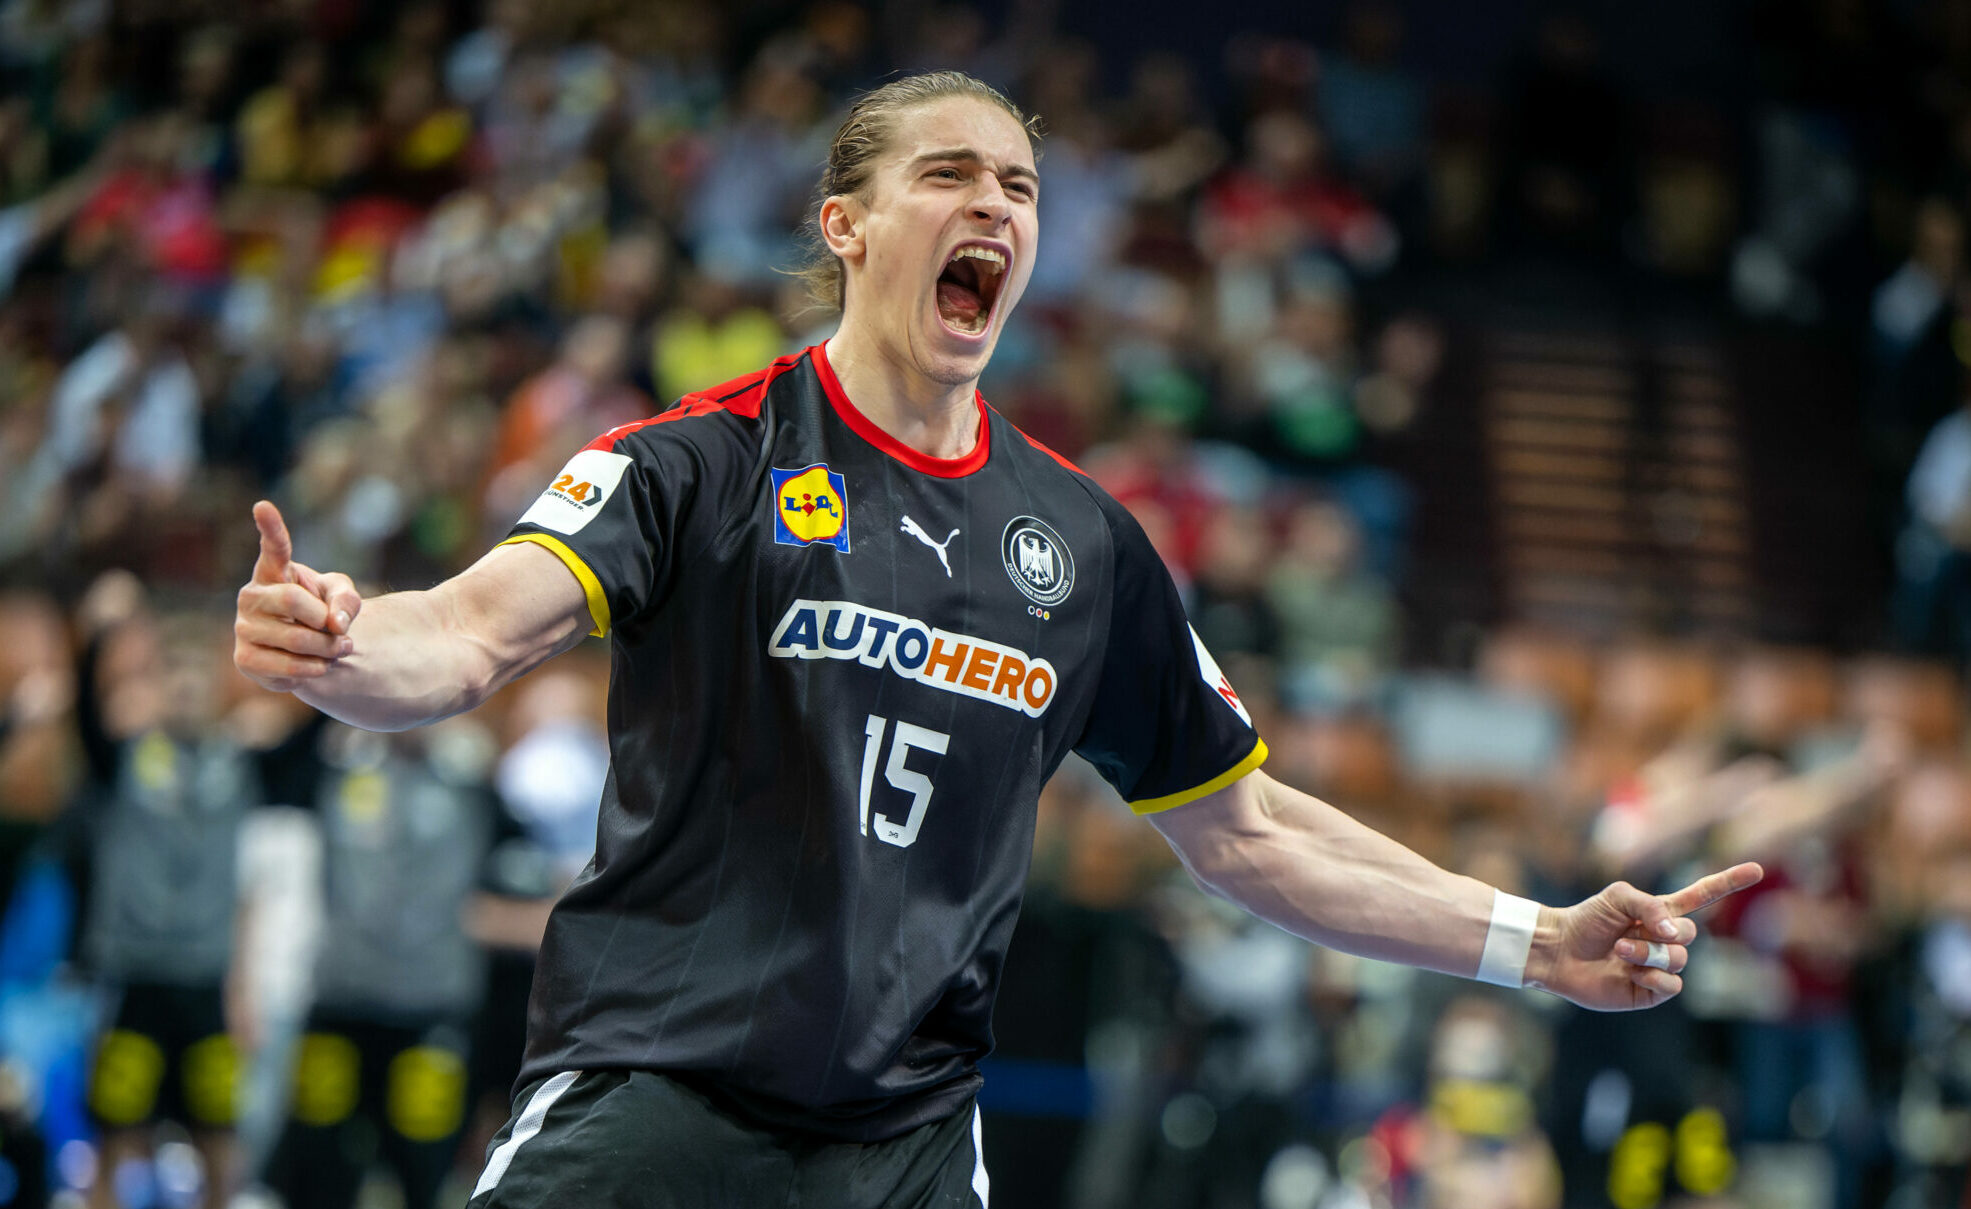 Handball-Nationalspieler Juri Knorr jubelt